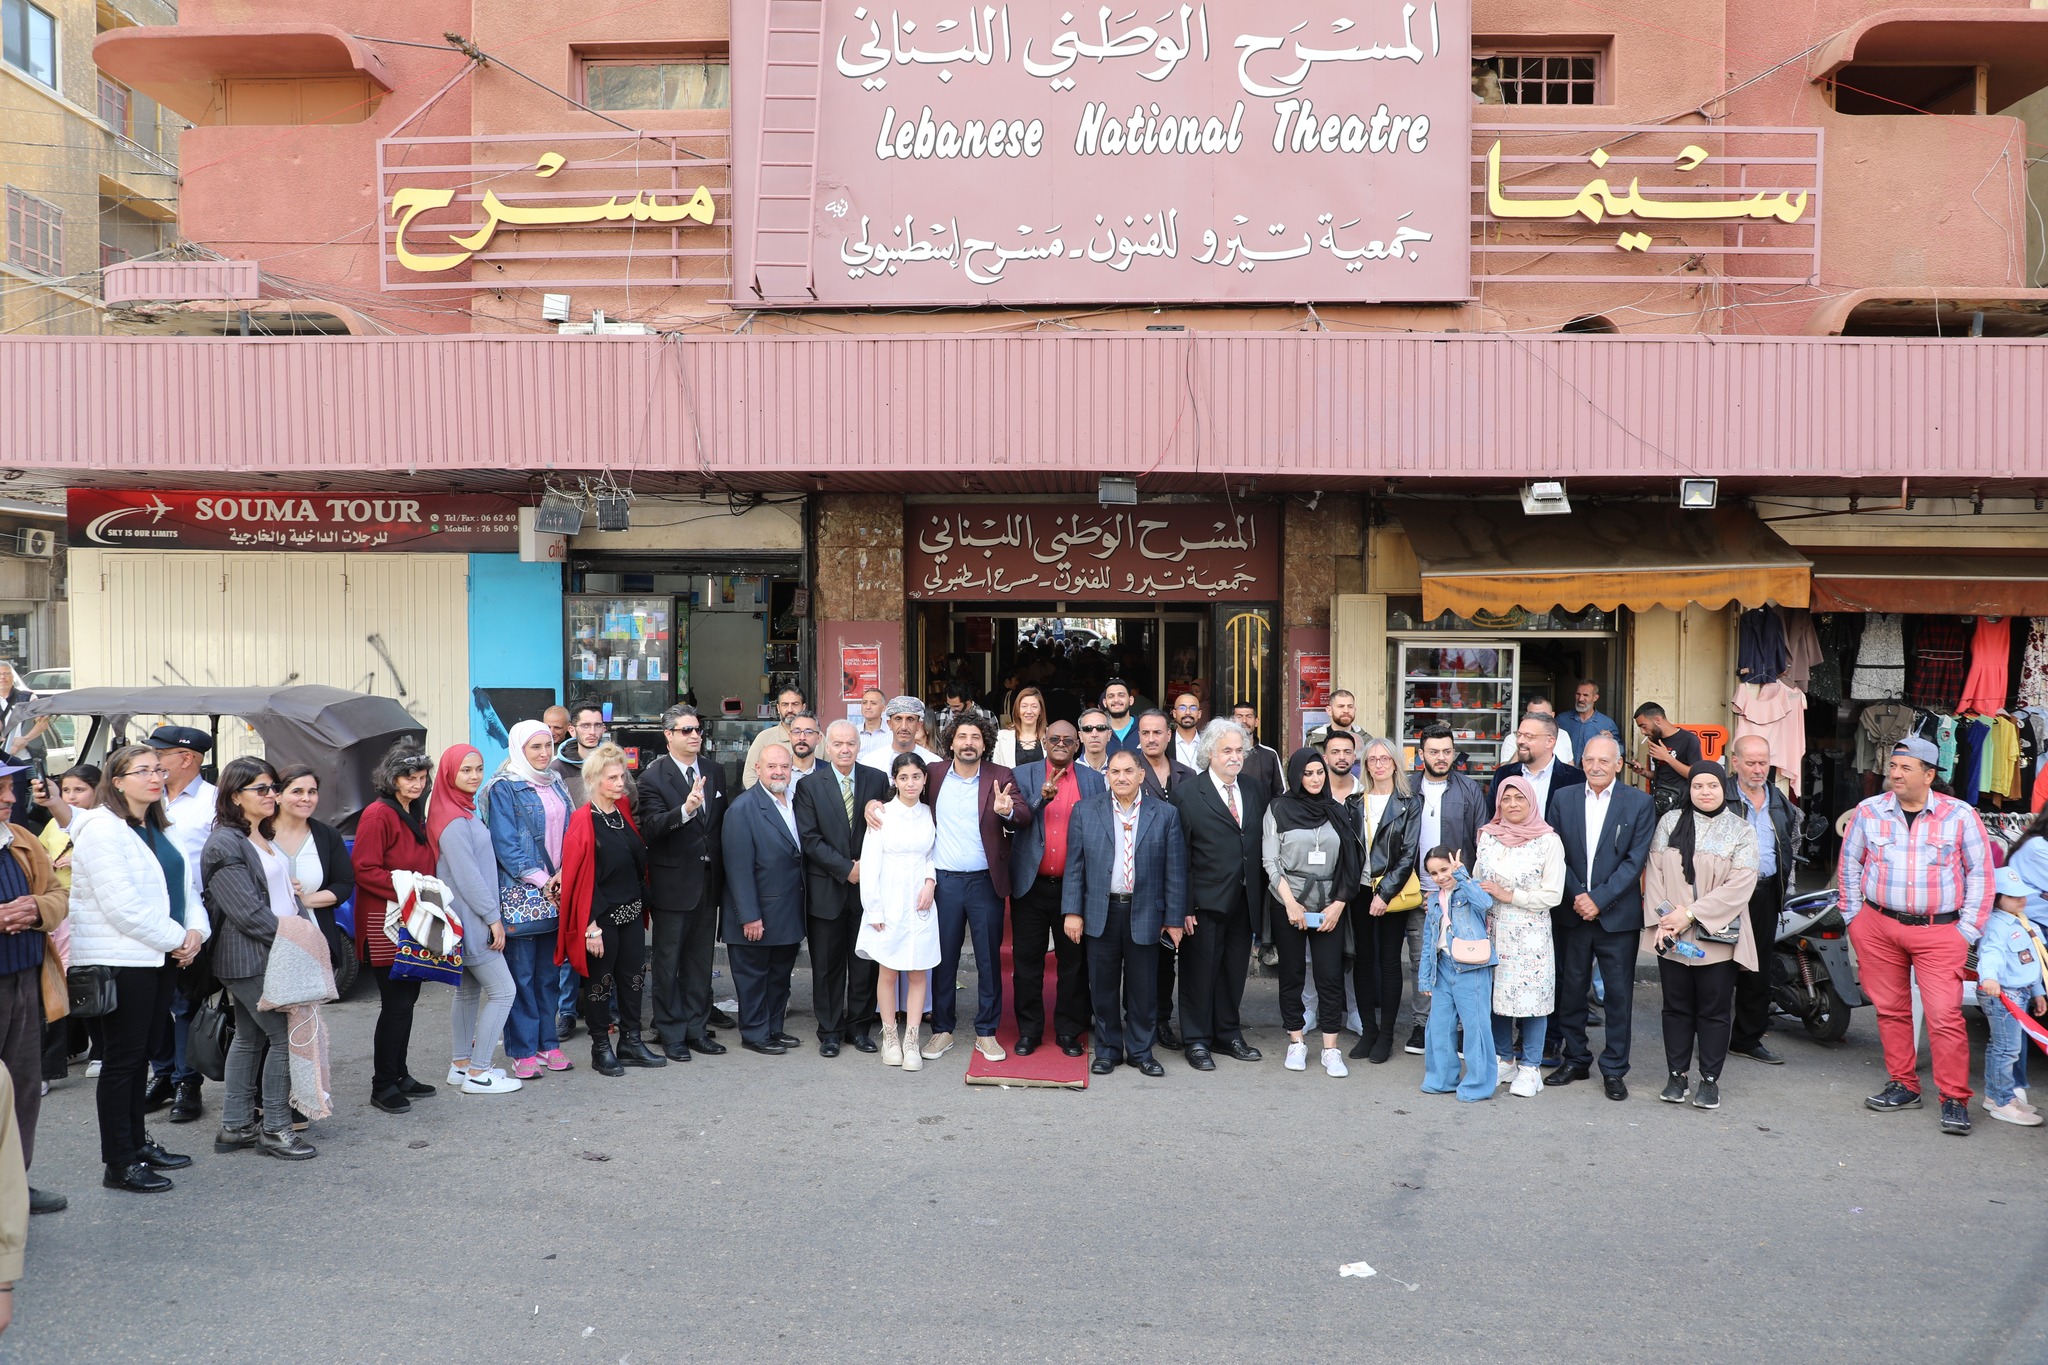 إطلاق مهرجان لبنان المسرحي الدولي في طرابلس 